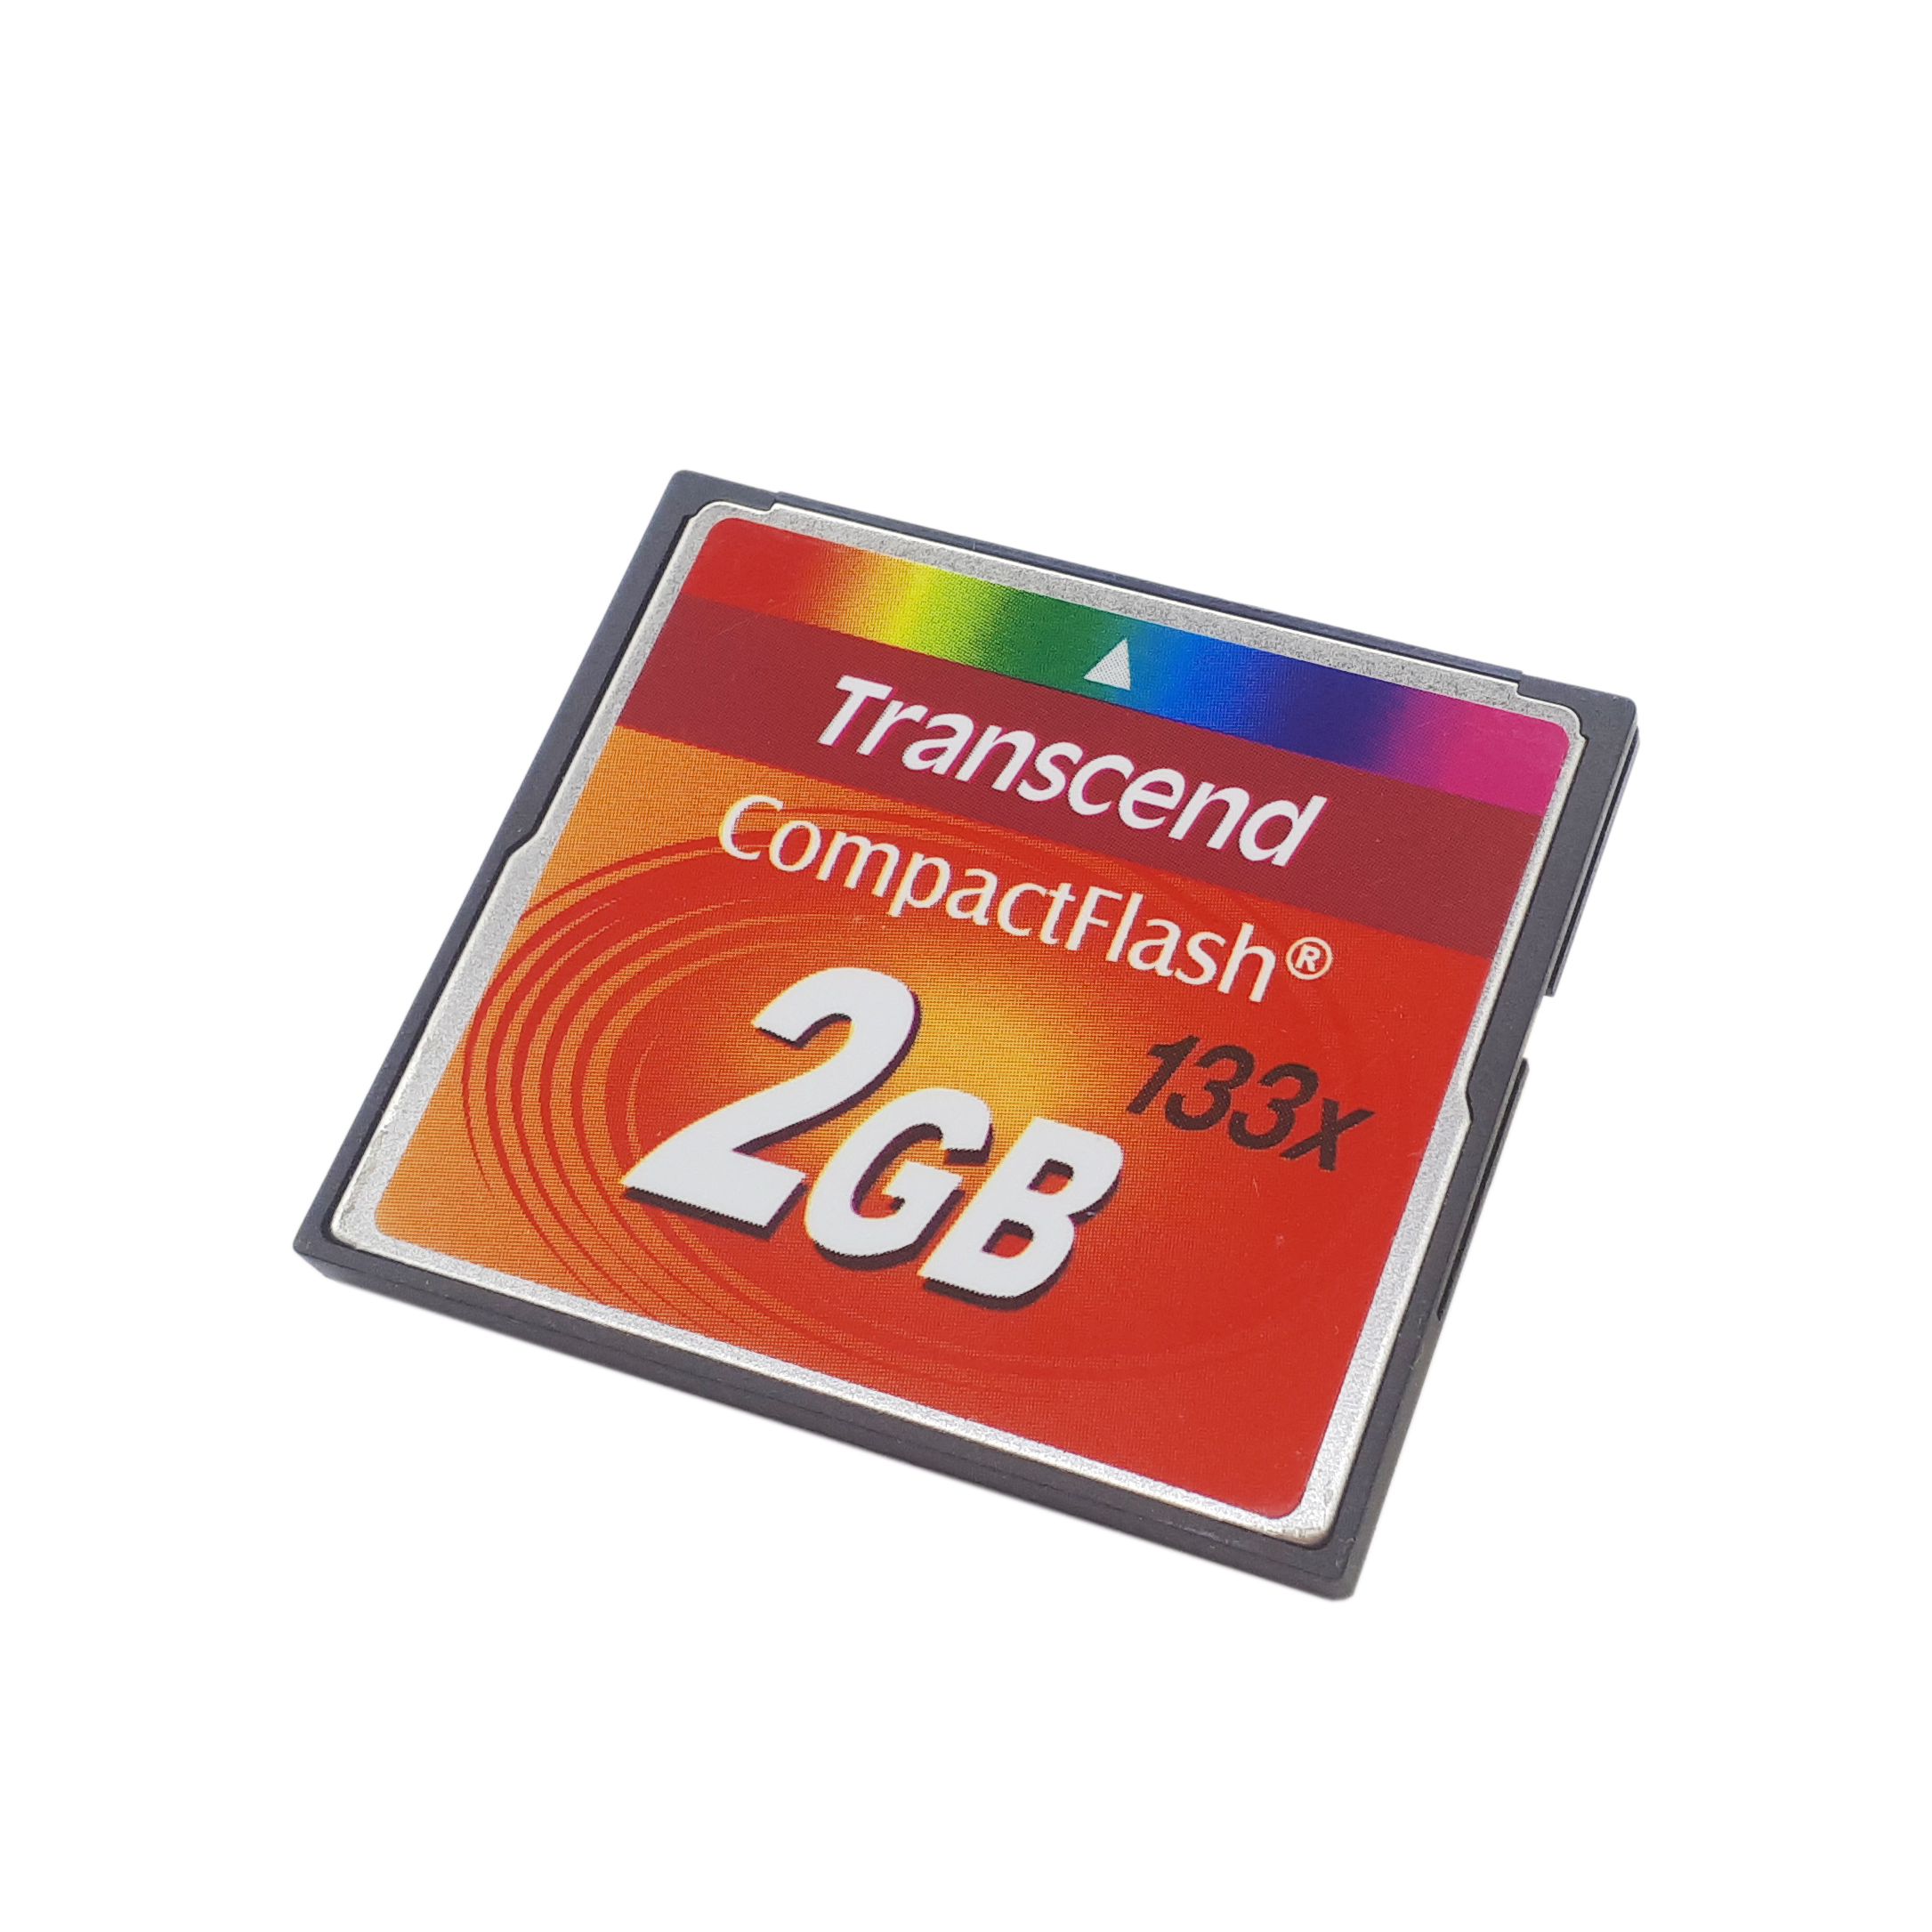 کارت حافظه CF ترنسند مدل TS4GCF133 کلاس 2 استاندارد U1 سرعت 33Mbps ظرفیت 2 گیگابایت